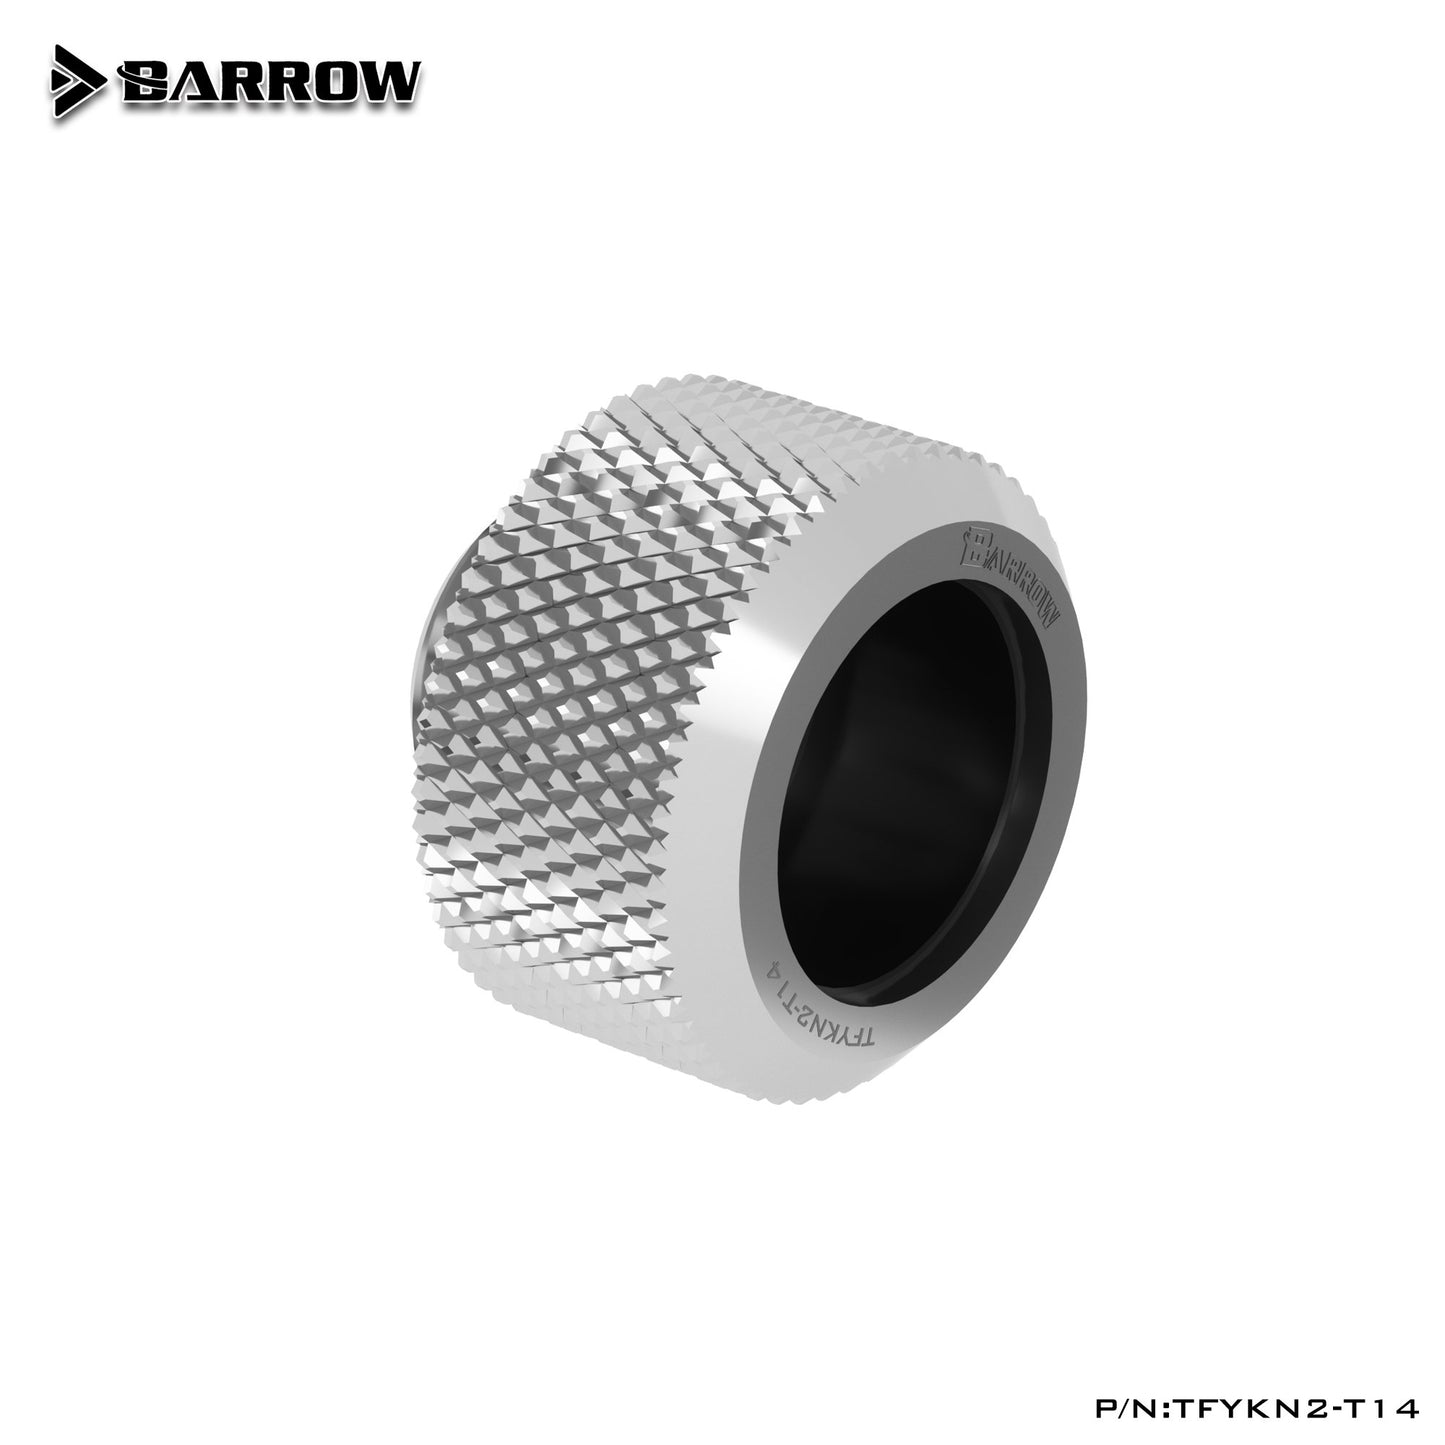 Barrow TFYKN2-T14, raccords pour tubes durs OD14mm, anneau en caoutchouc anti-arrêt amélioré de la série Choice, pour tubes durs OD14mm